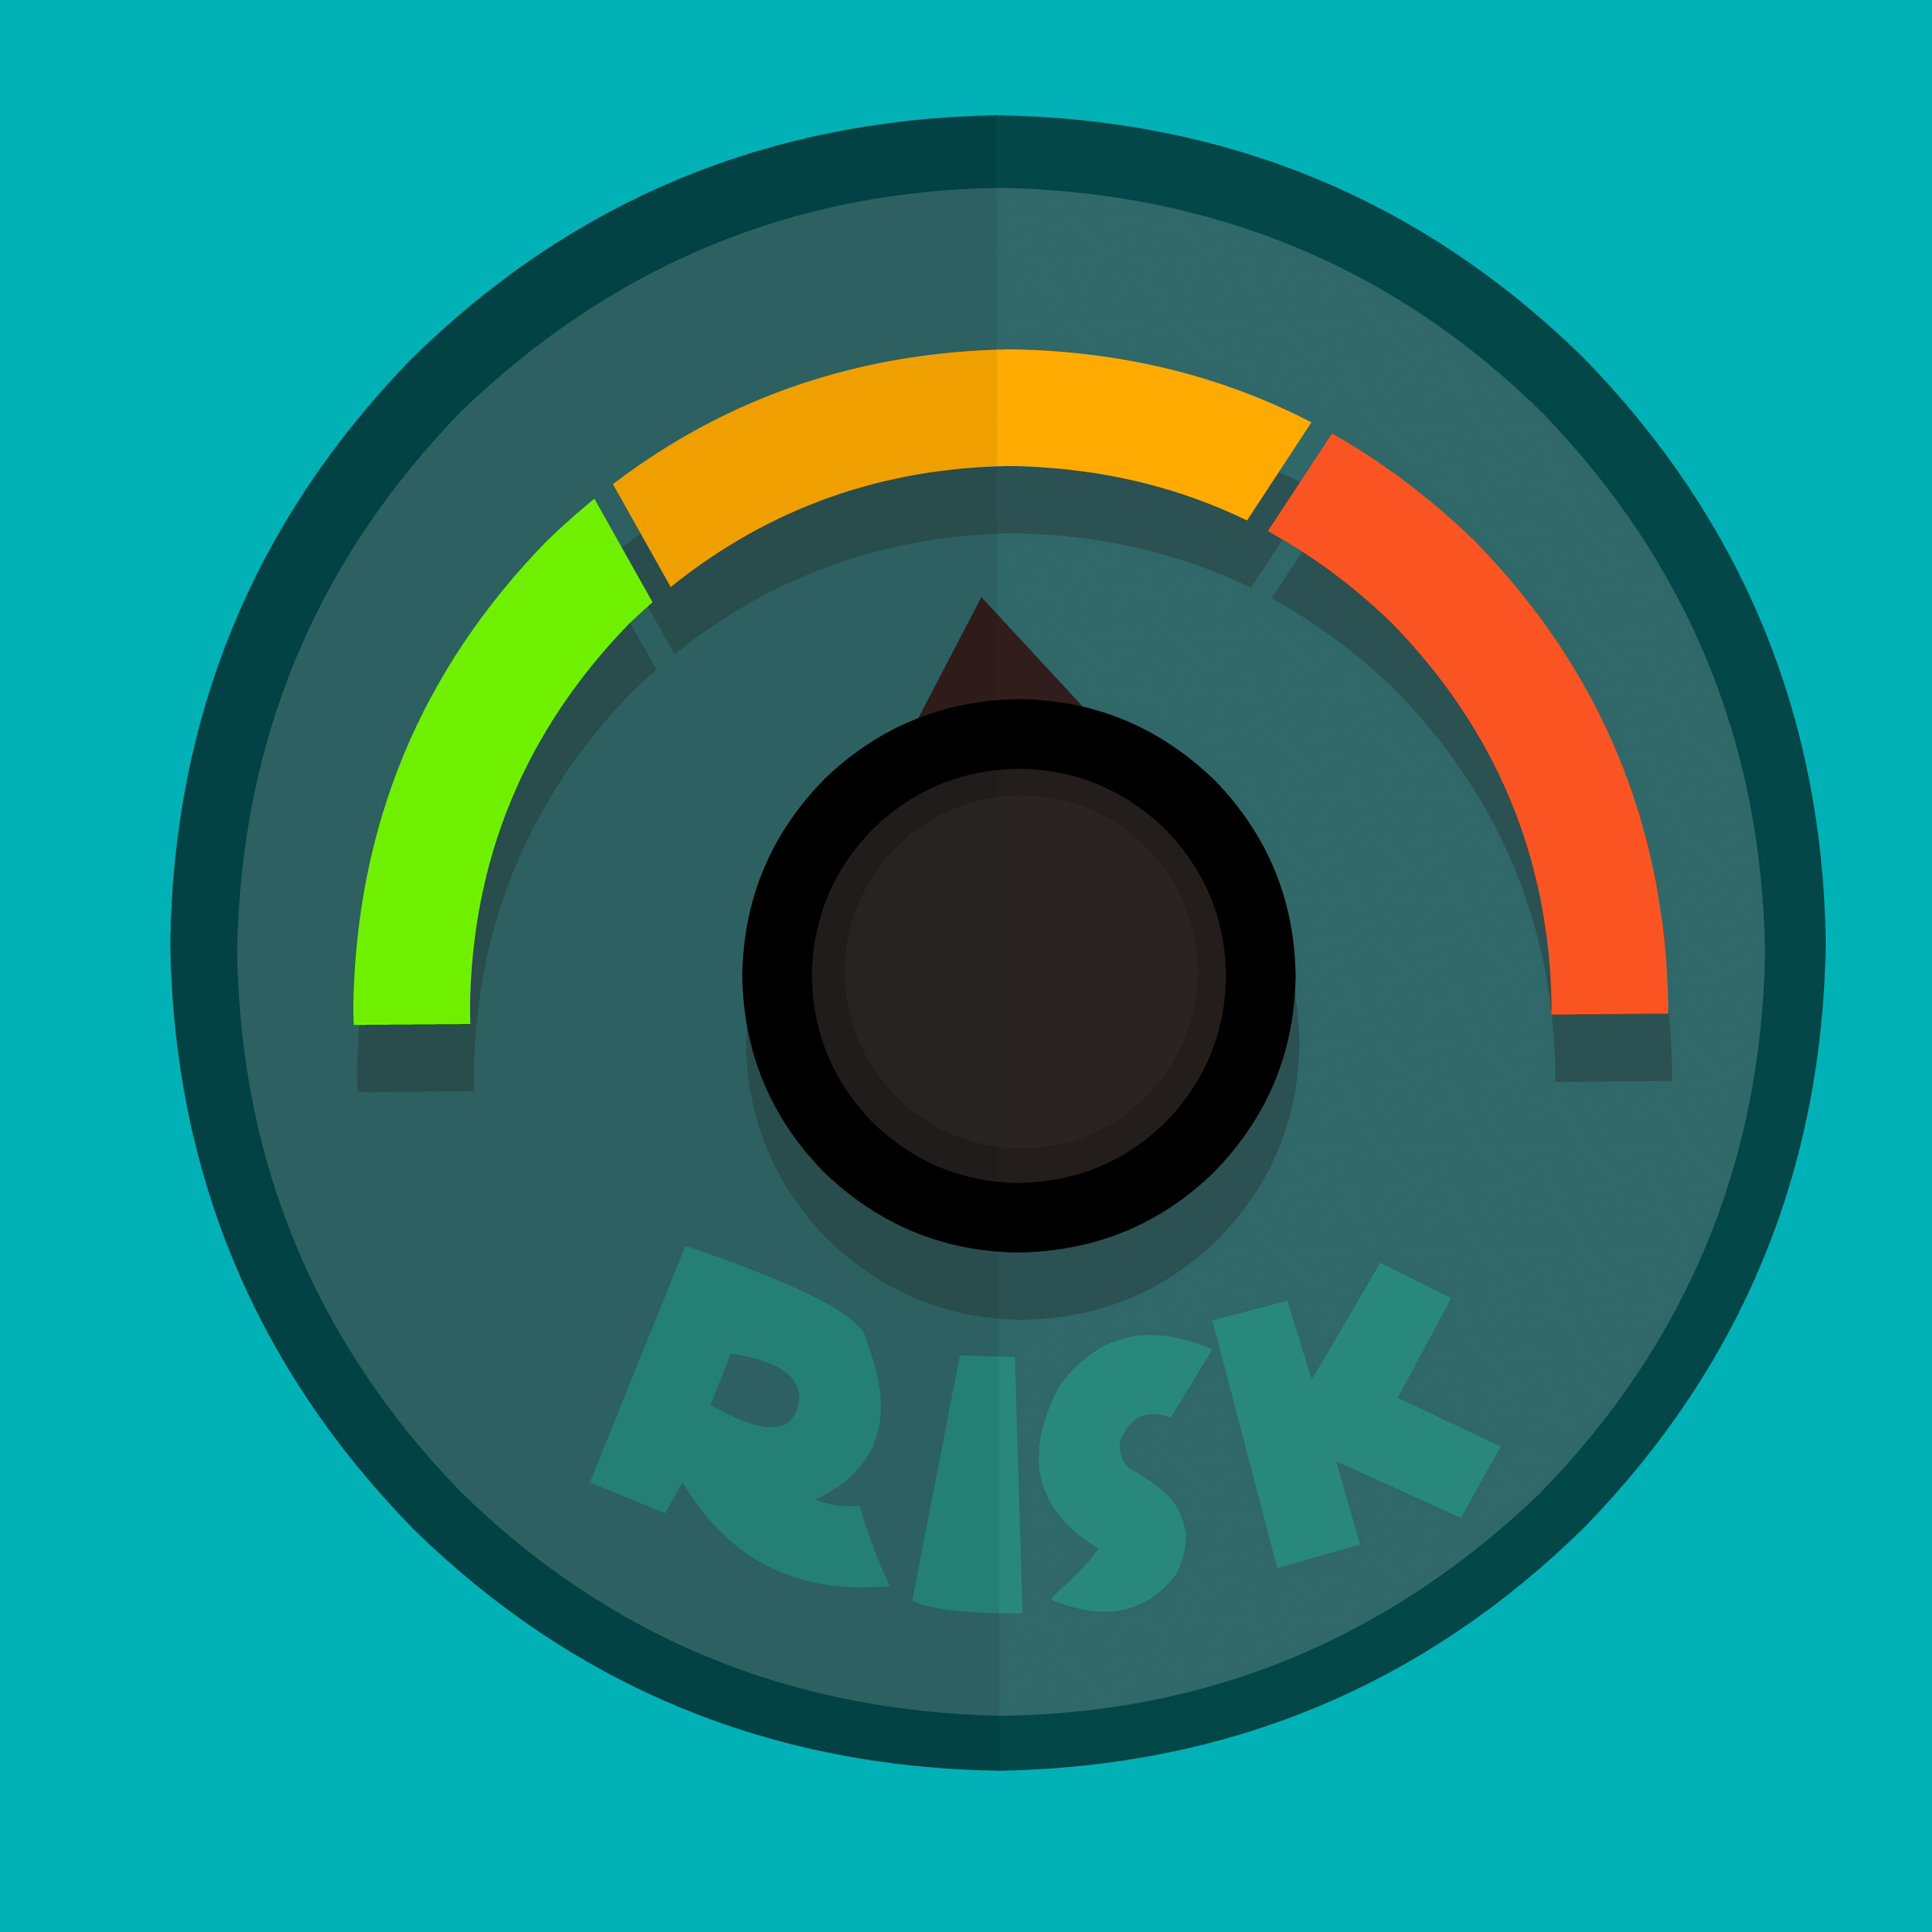 risk-risk-management-risk-assessment-consultancy-risk-analysis-risk-free-1444649-pxhere.com-1